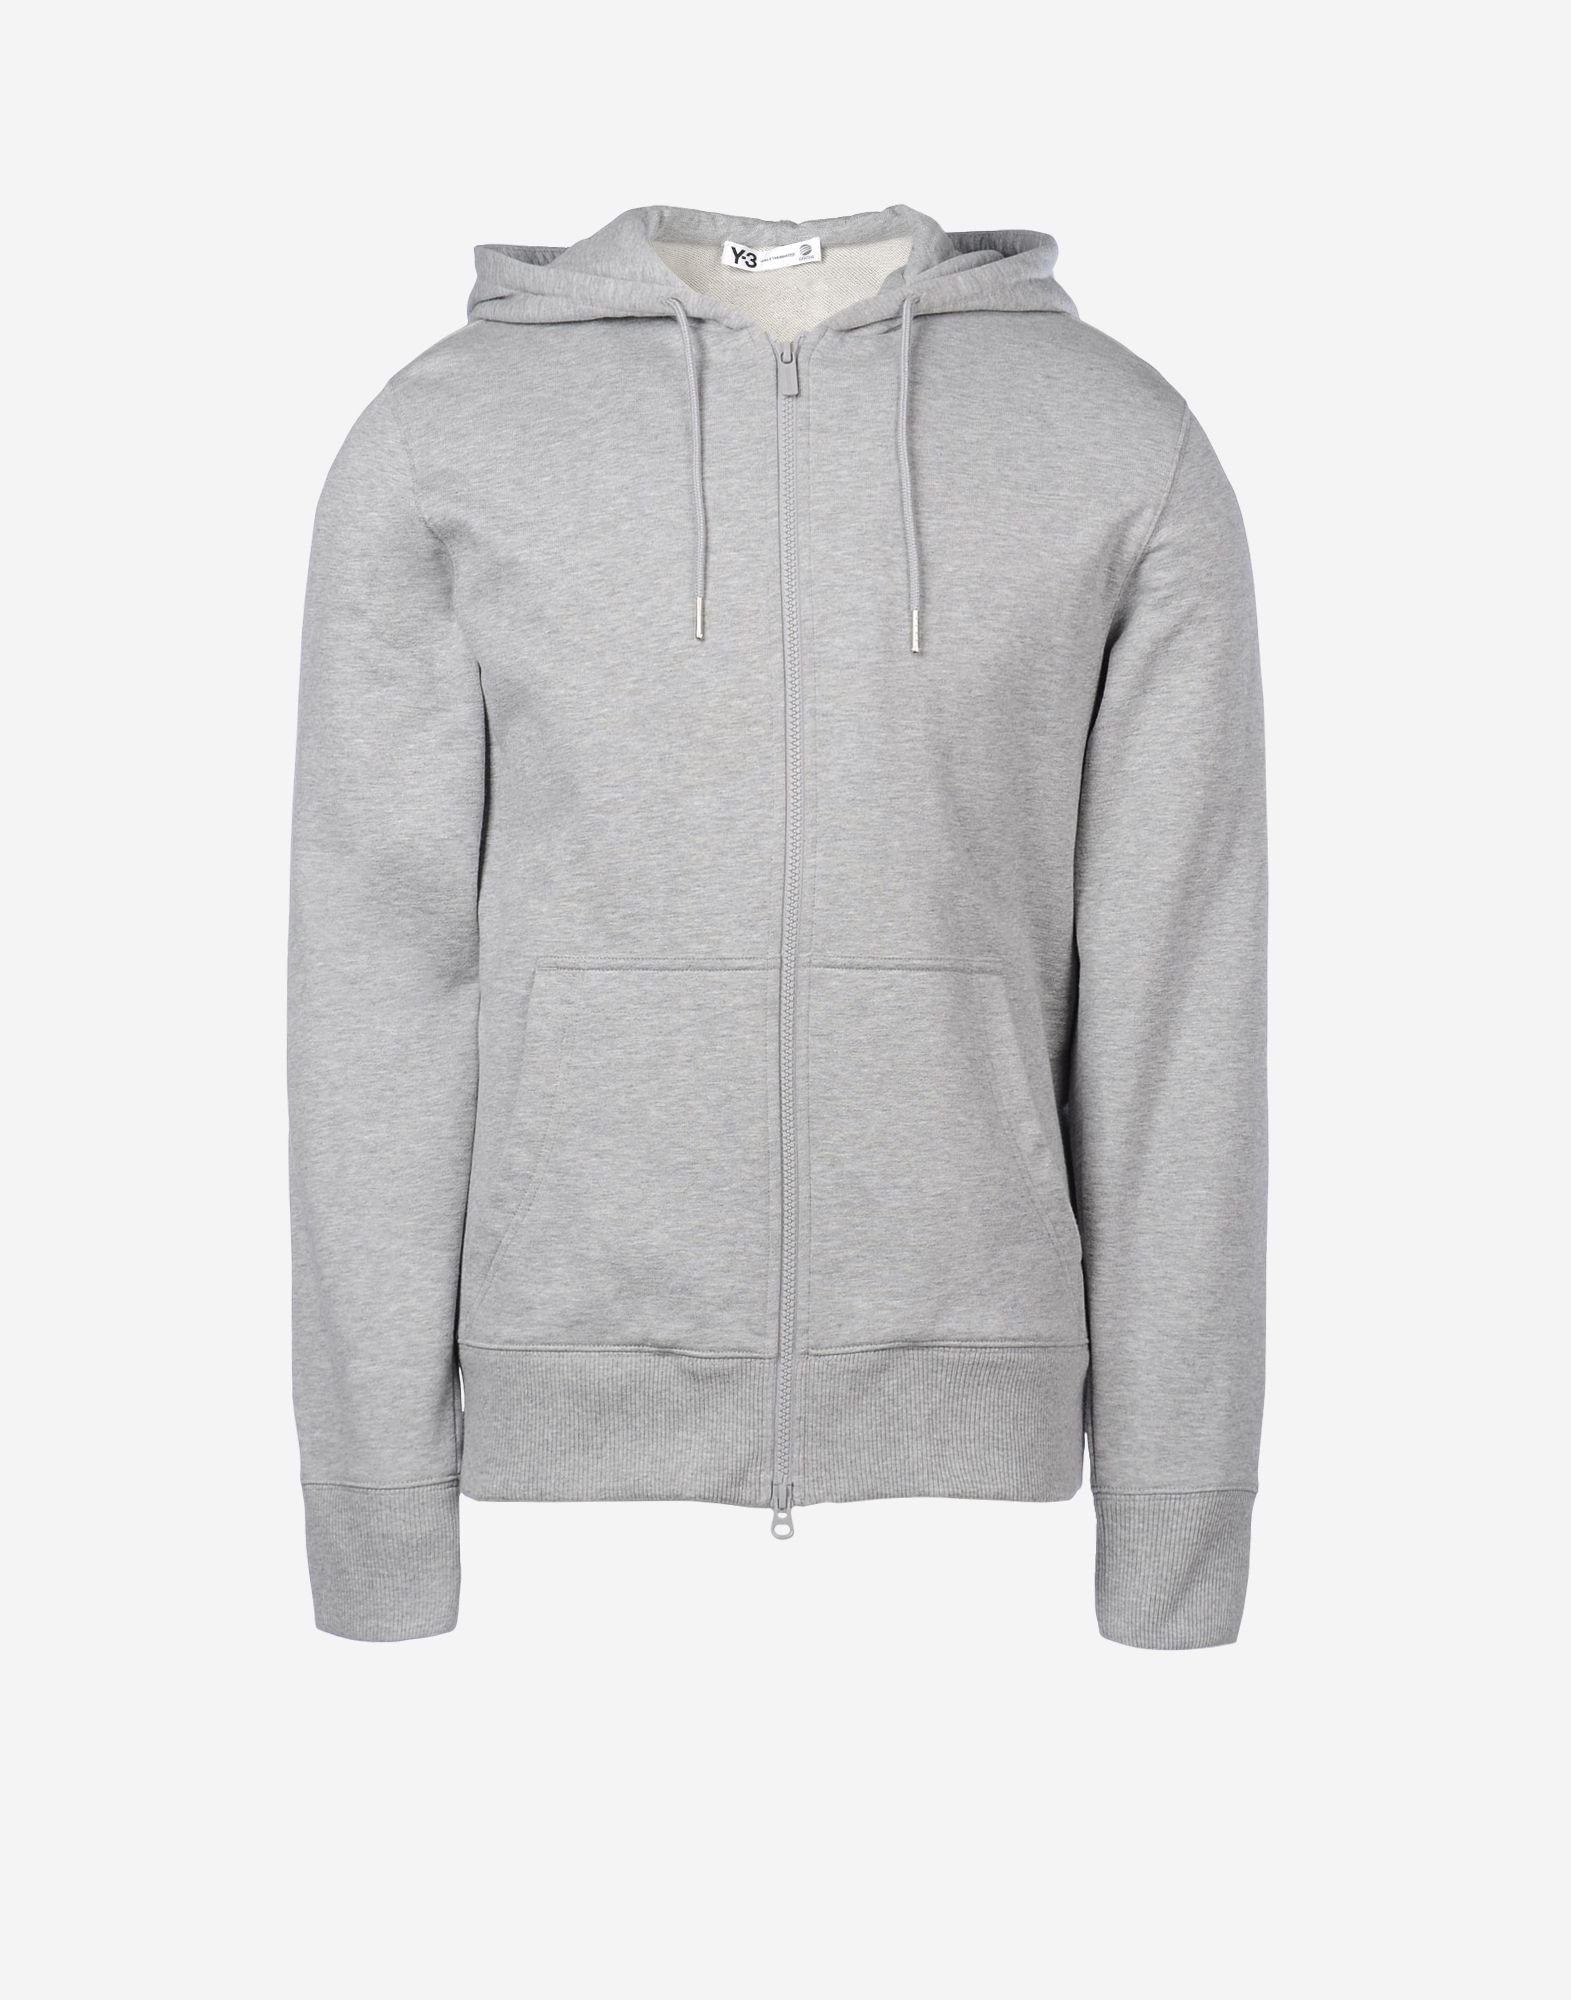 y3 grey sweatshirt